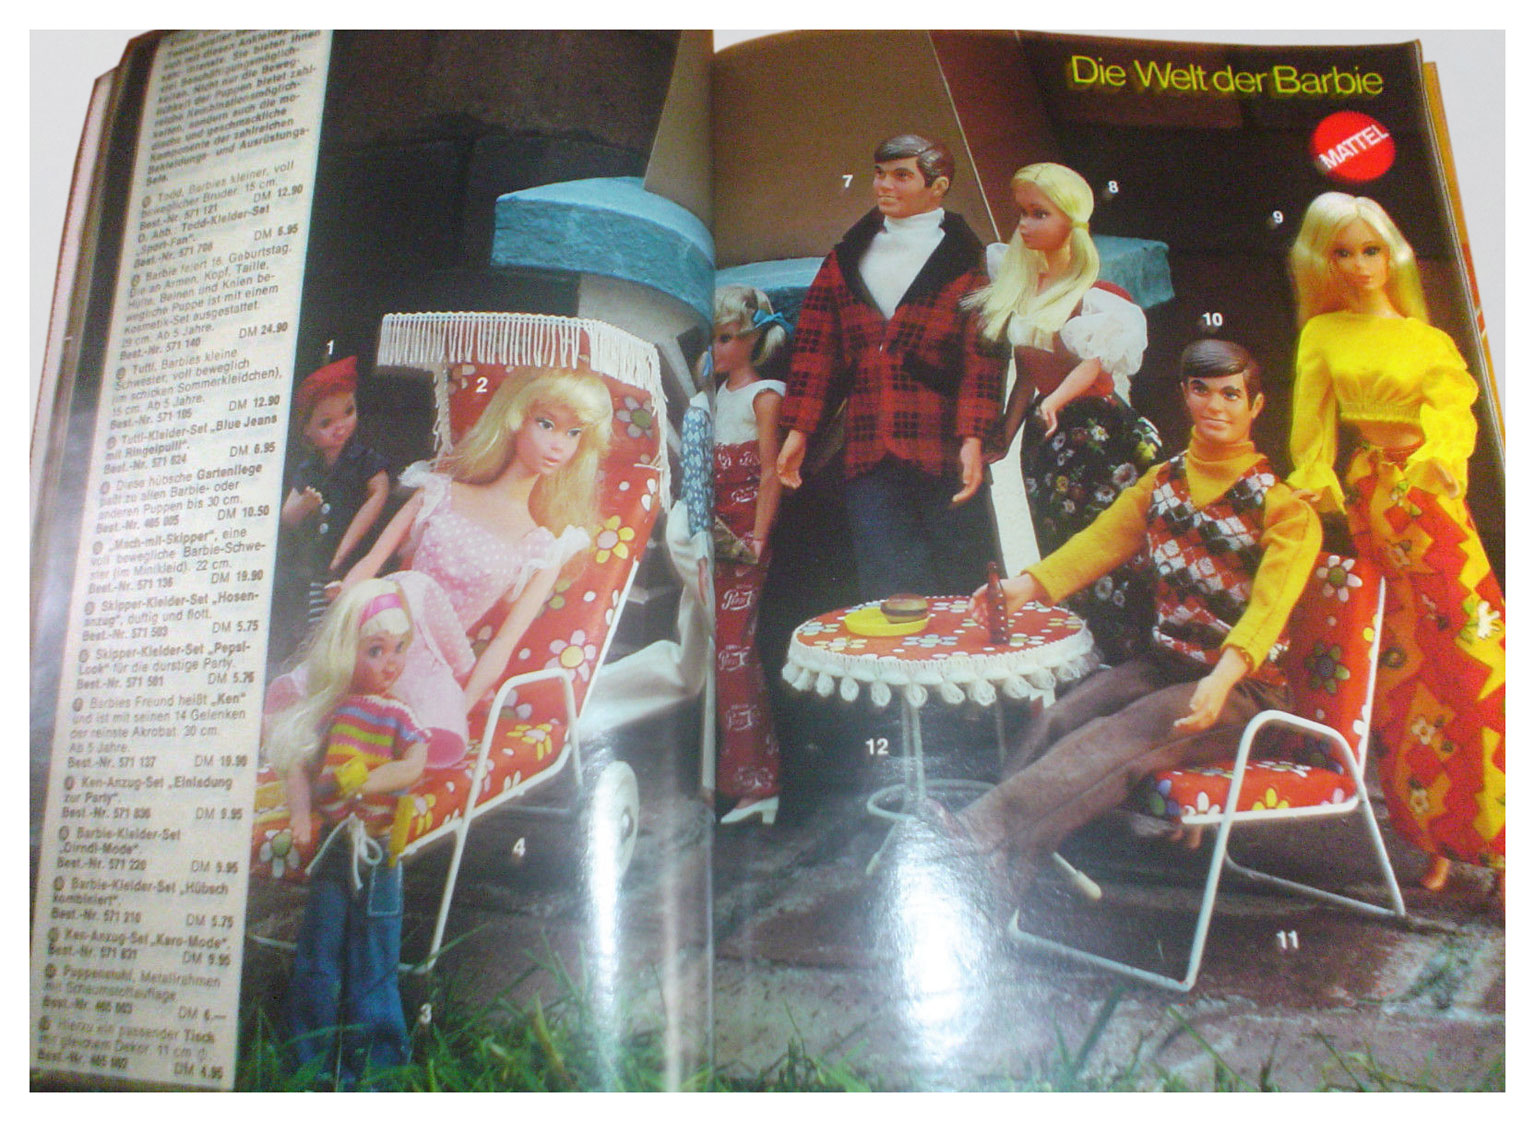 From 1974 German Spiel+Freizeit catalogue